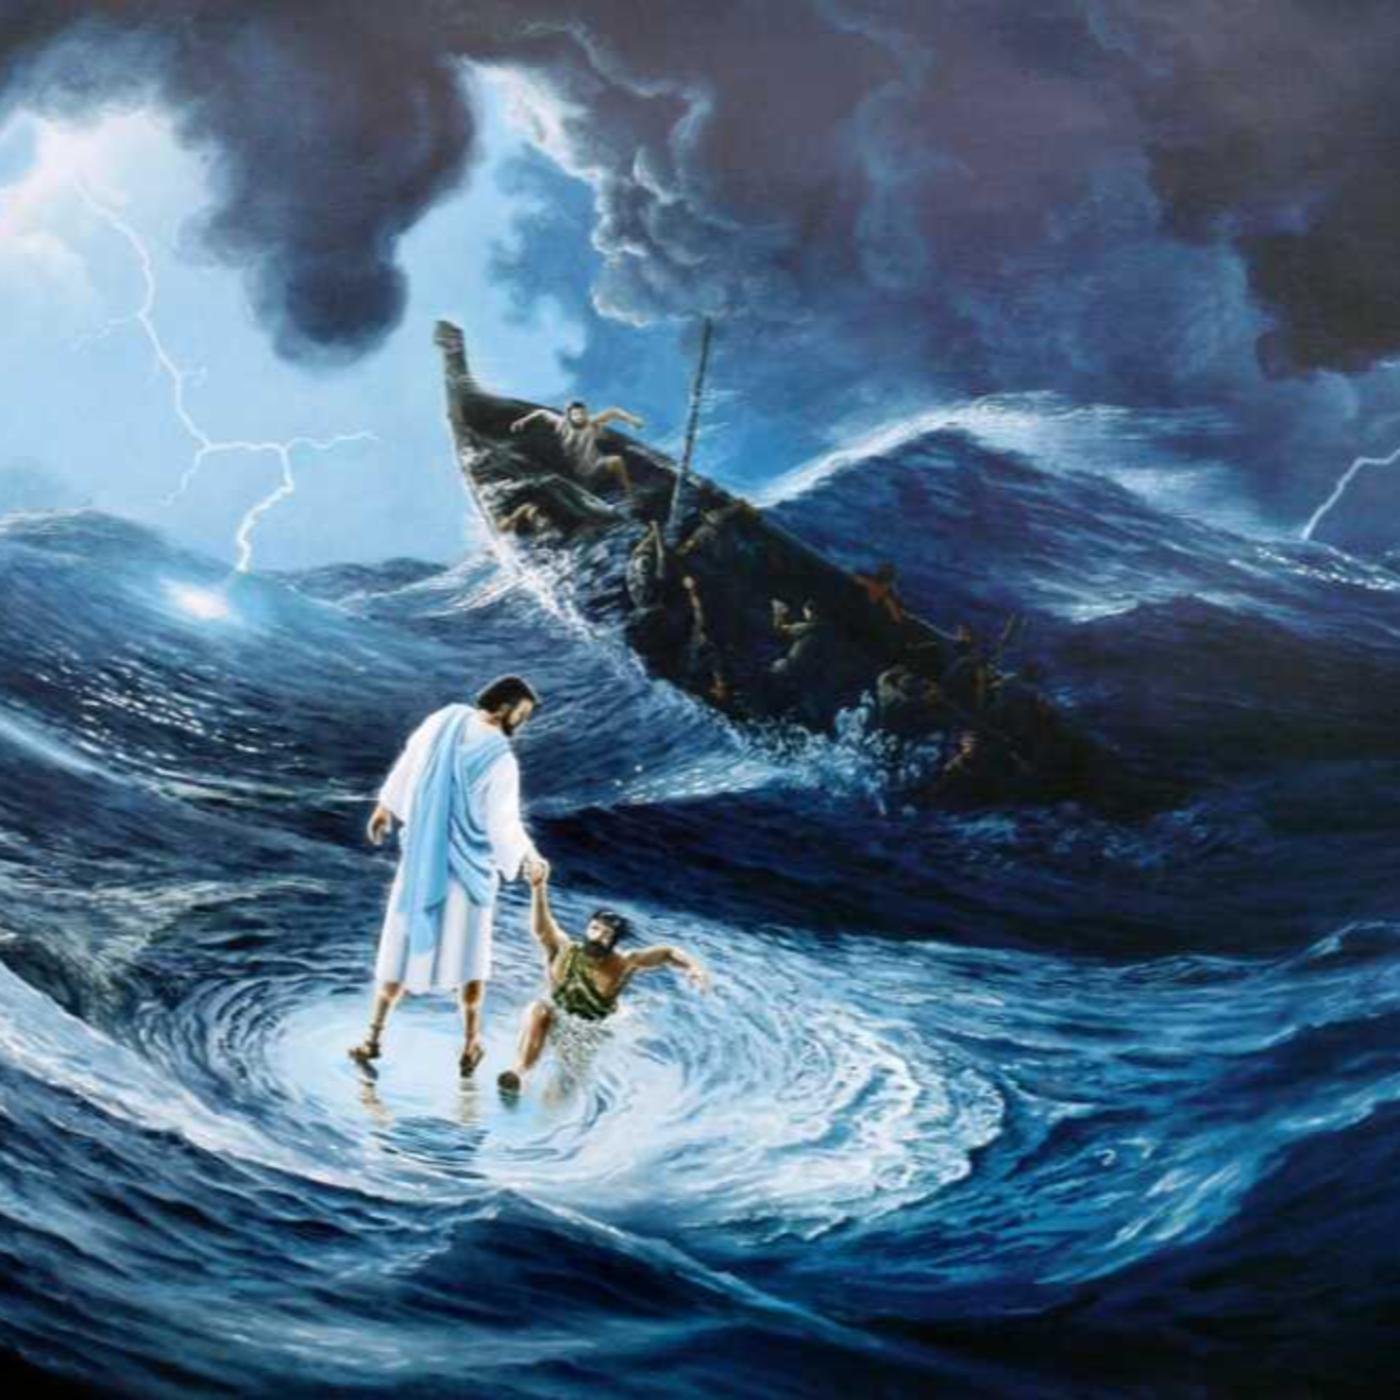 Пошел по воду. Акиана Крамарик Иисус Христос. Идет по воде. Иисус идет по воде. Ииссиисус идущий по воде.